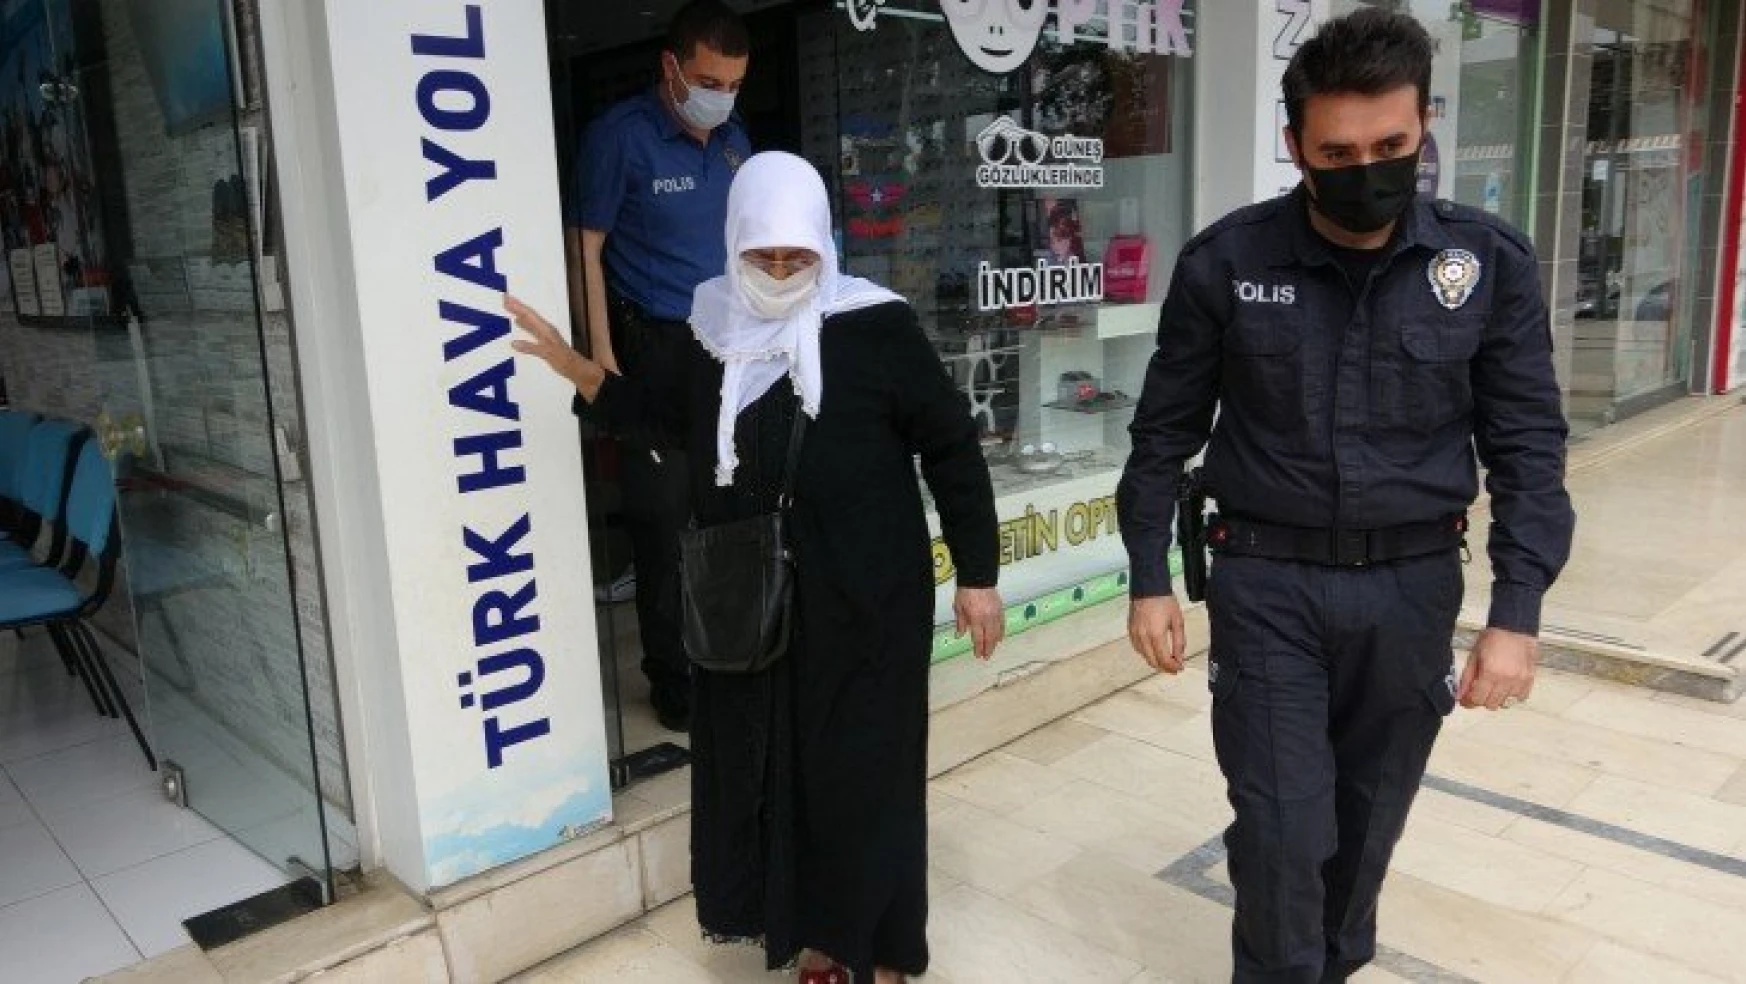 Gözlüğü kırılan yaşlı kadının yardımına polisler koştu